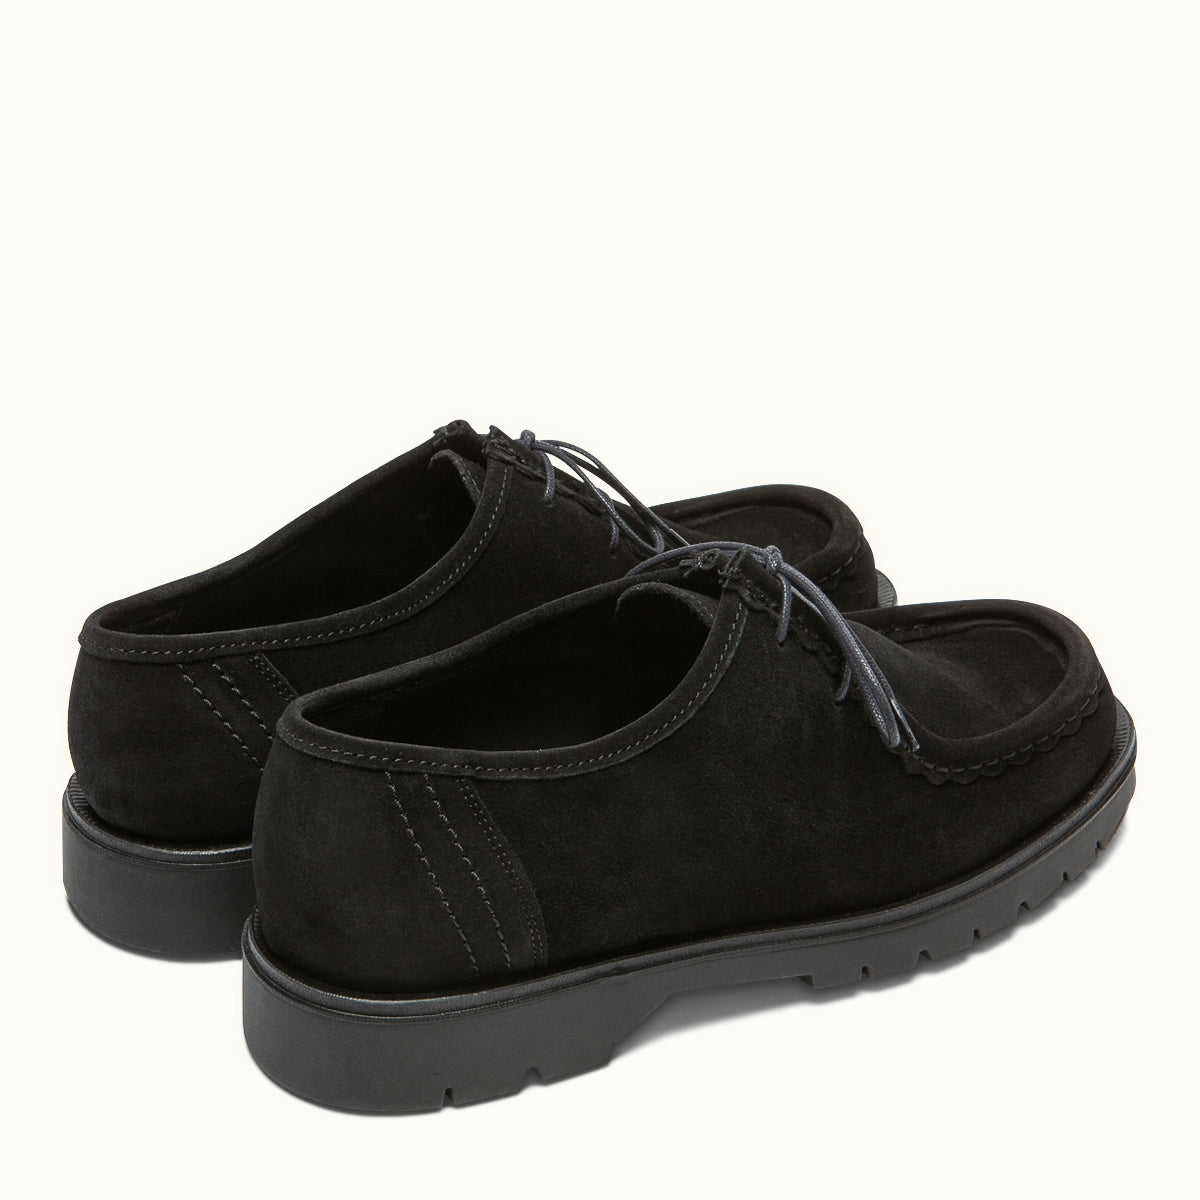 Kleman Padror Shoes Black